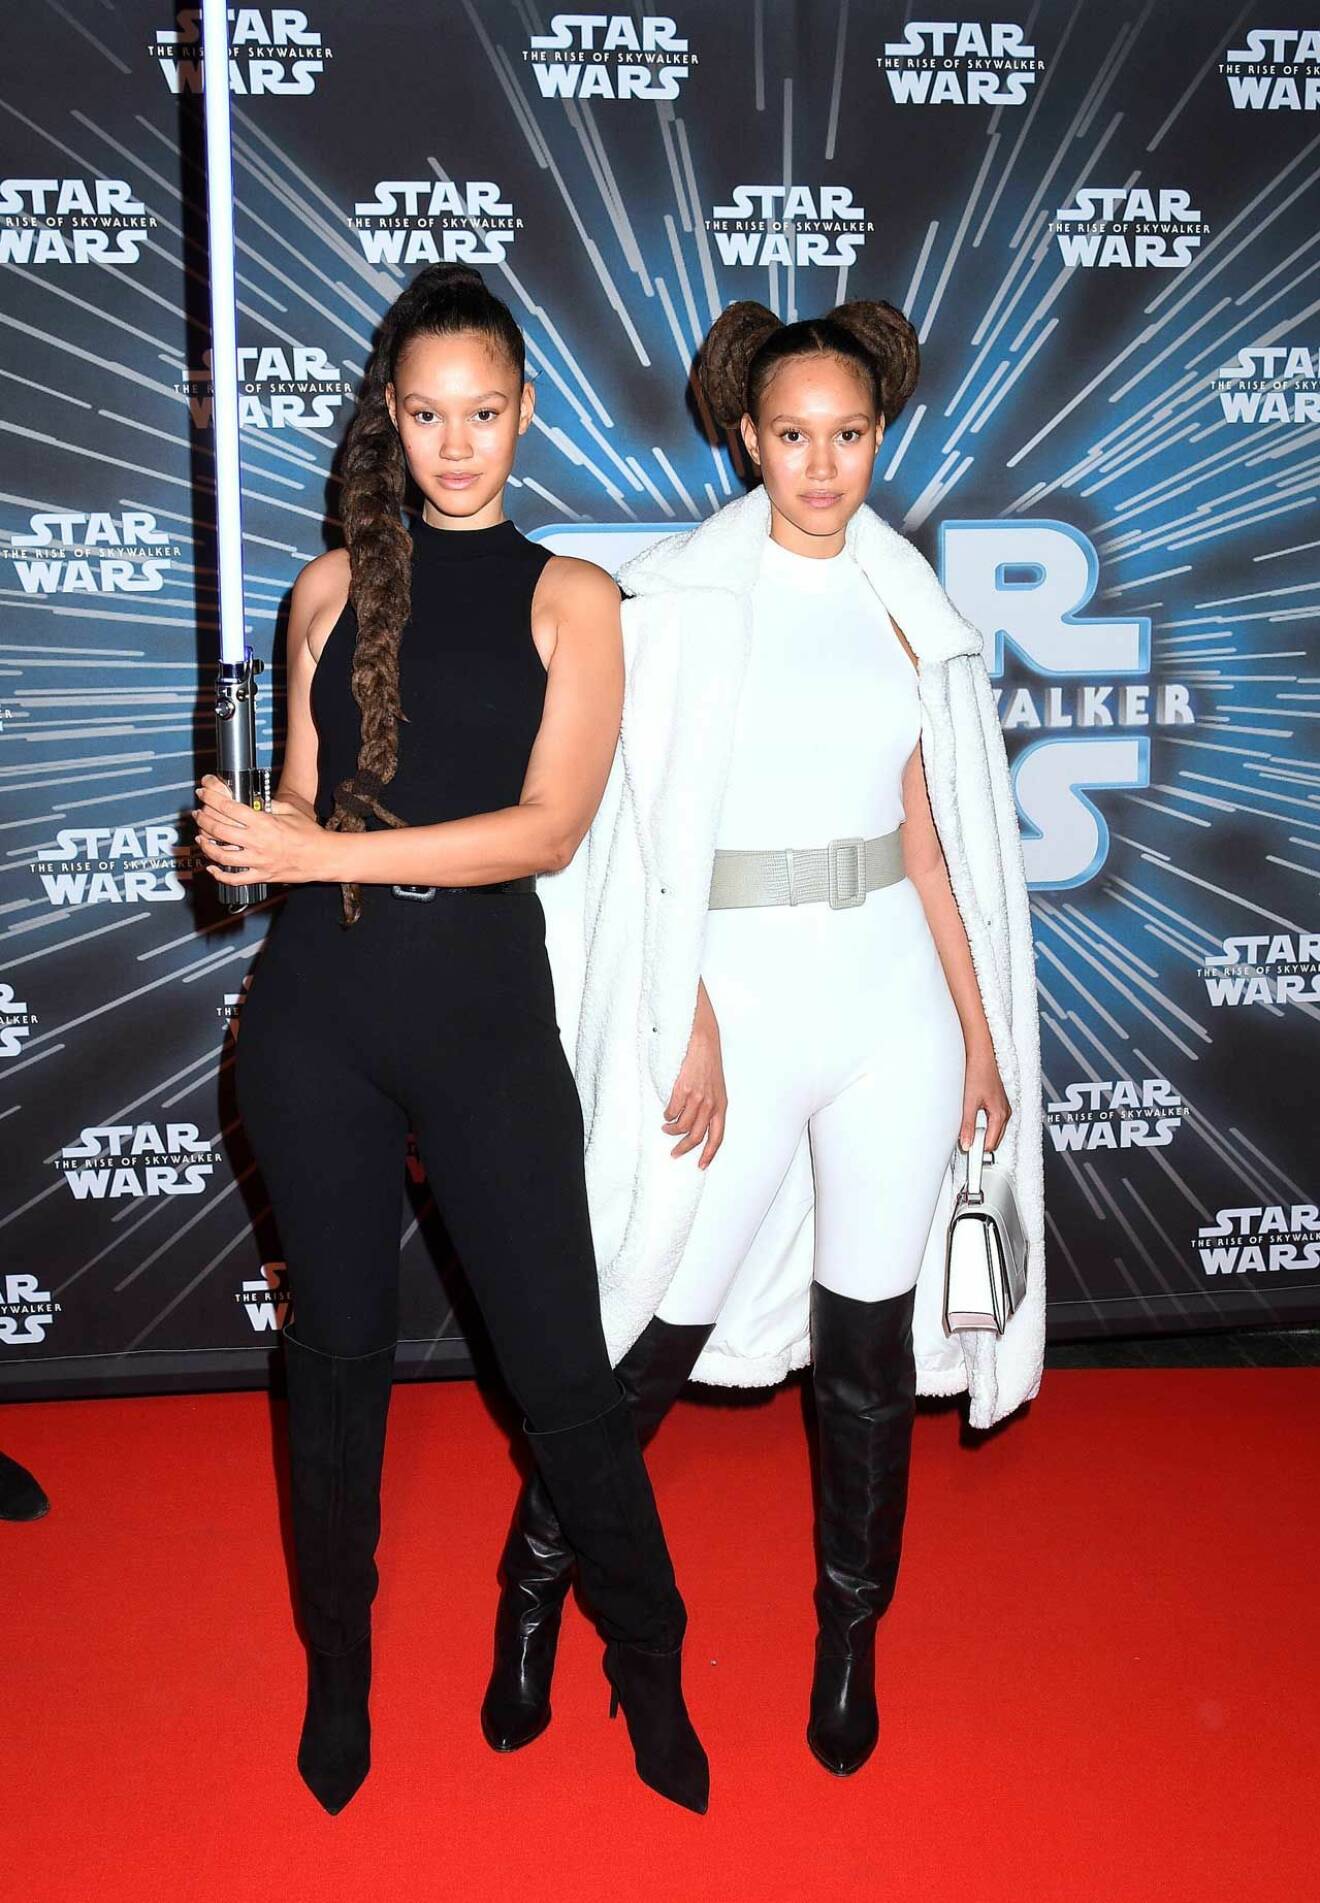 Snygga Star Wars-tvillingar med ett coolt efternamn! Modellerna och bloggerskorna Elizabeth och Victoria Lejonhjärta.